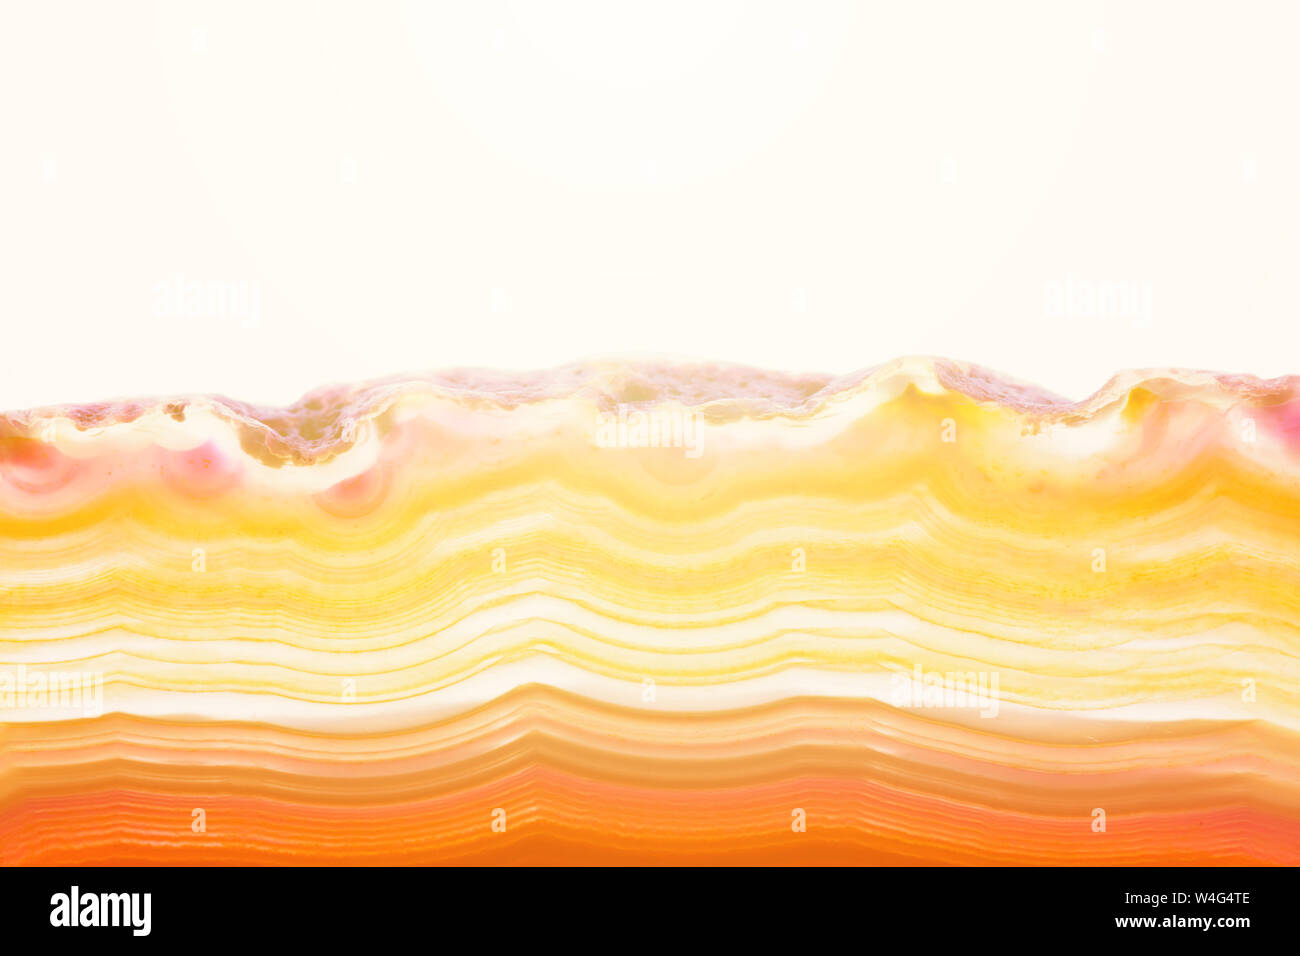 Zusammenfassung Hintergrund, orange und gelb gestreifte mineral Achat Querschnitt mit Sunbeam auf weißem Hintergrund Stockfoto